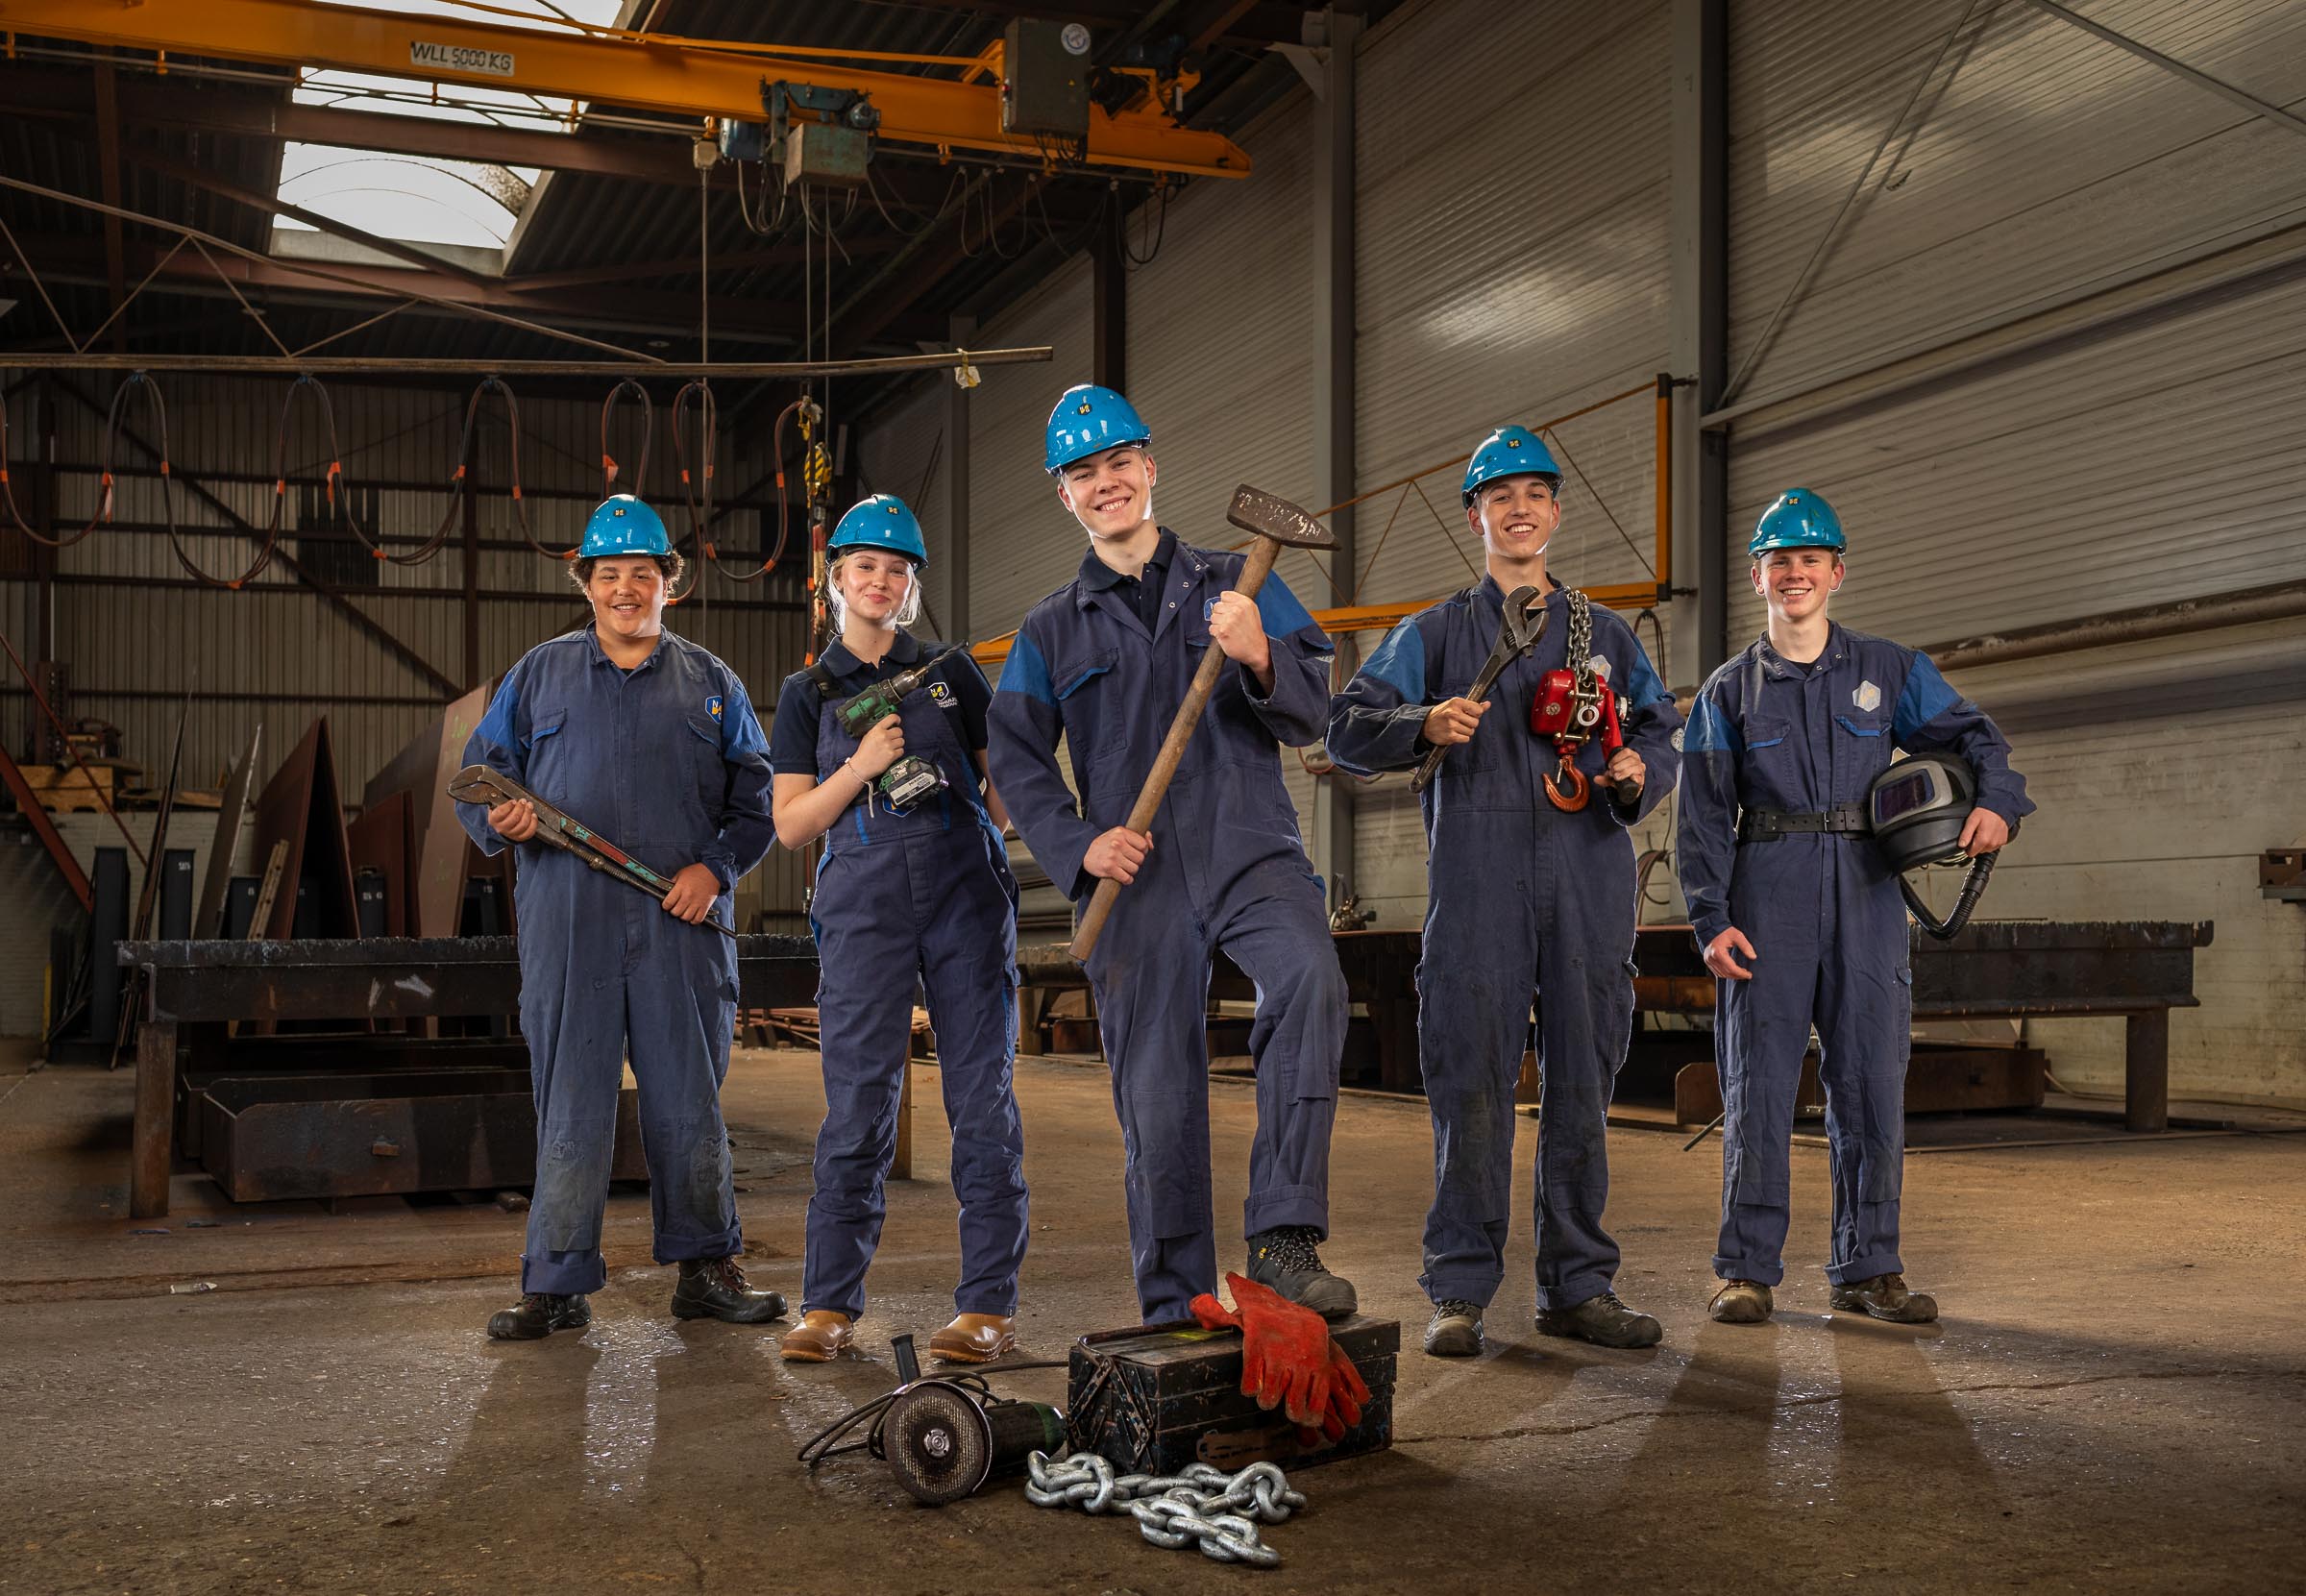 5 jongeren in kledij van scheepsbouwer Nieuwenhuijsen t.b.v. een campagne om meer jongeren aan te trekken voor werken in de scheepsbouw.